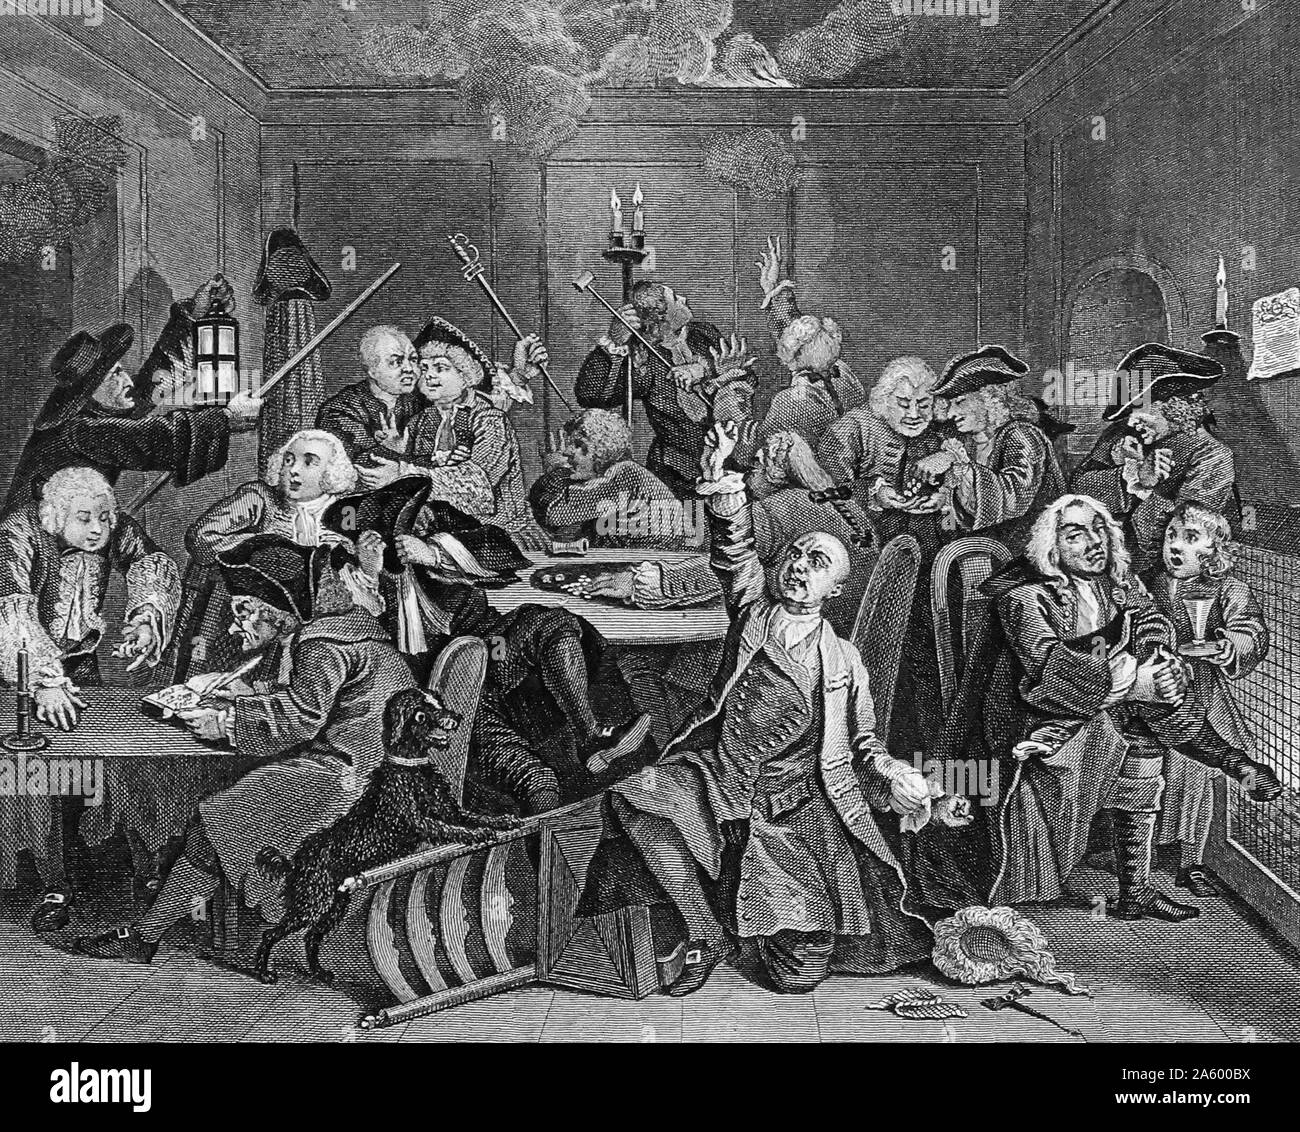 Eine Harke Fortschritt - Platte 6 - Szene In einem Gaming-Haus von William Hogarth (1697-1764). Englischer Maler, Grafiker, bildhafte Satiriker. Das sechste Bild zeigt Tom bittet um die Hilfe des Allmächtigen in eine Spielhölle an Sohos White Club nach dem Verlust seiner "neue Vermögen". Stockfoto